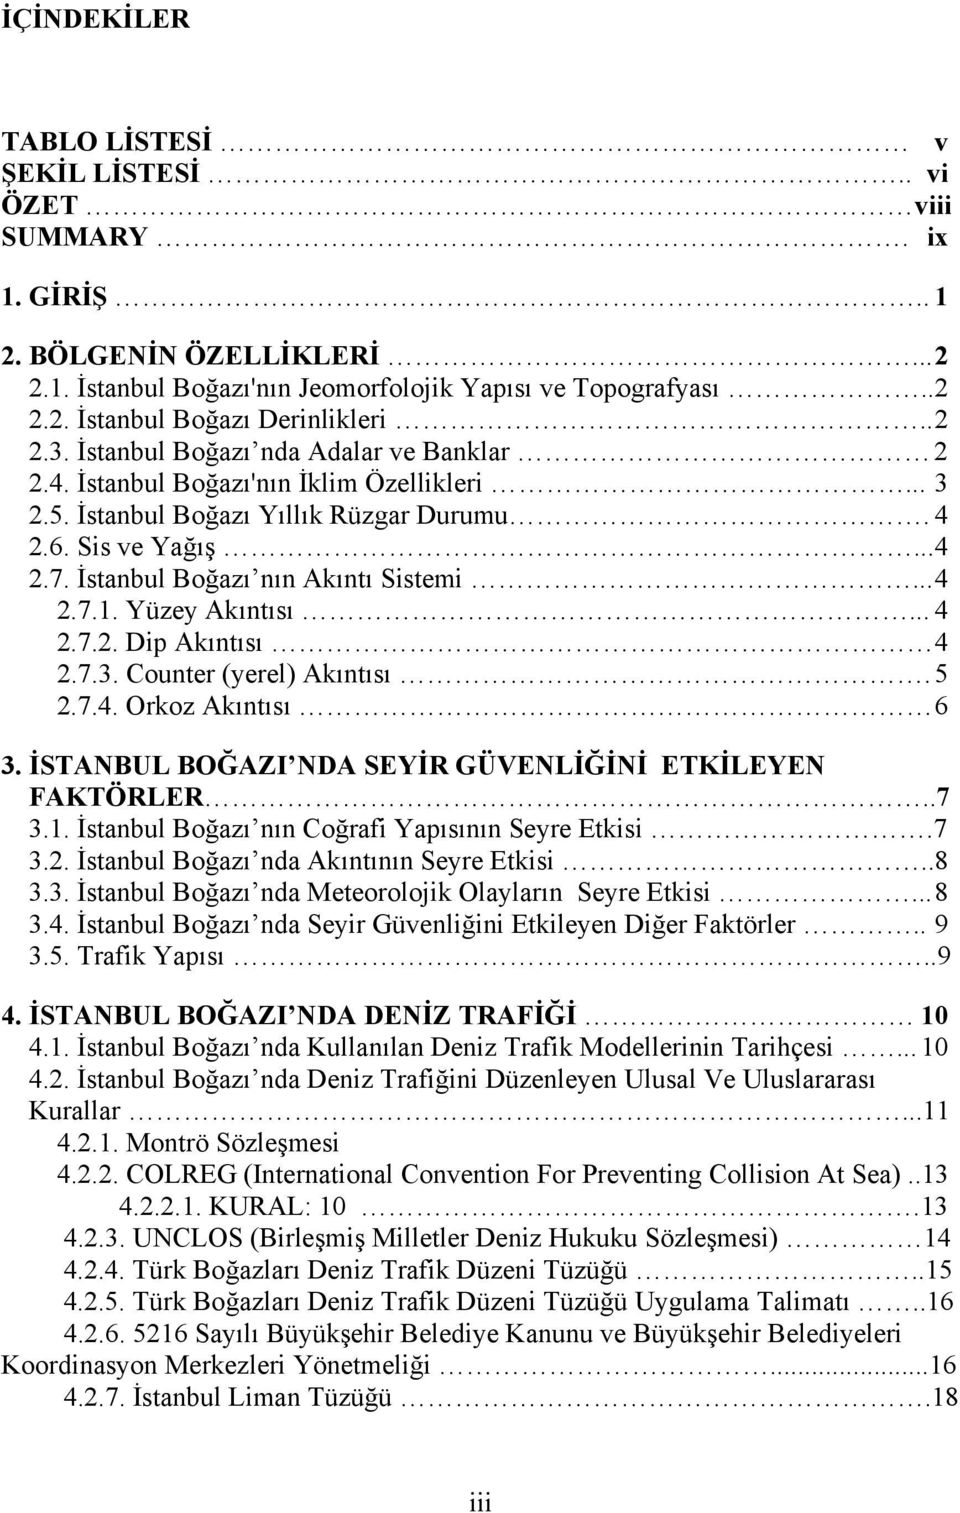 İstanbul Boğazı nın Akıntı Sistemi... 4 2.7.1. Yüzey Akıntısı... 4 2.7.2. Dip Akıntısı 4 2.7.3. Counter (yerel) Akıntısı. 5 2.7.4. Orkoz Akıntısı 6 3.